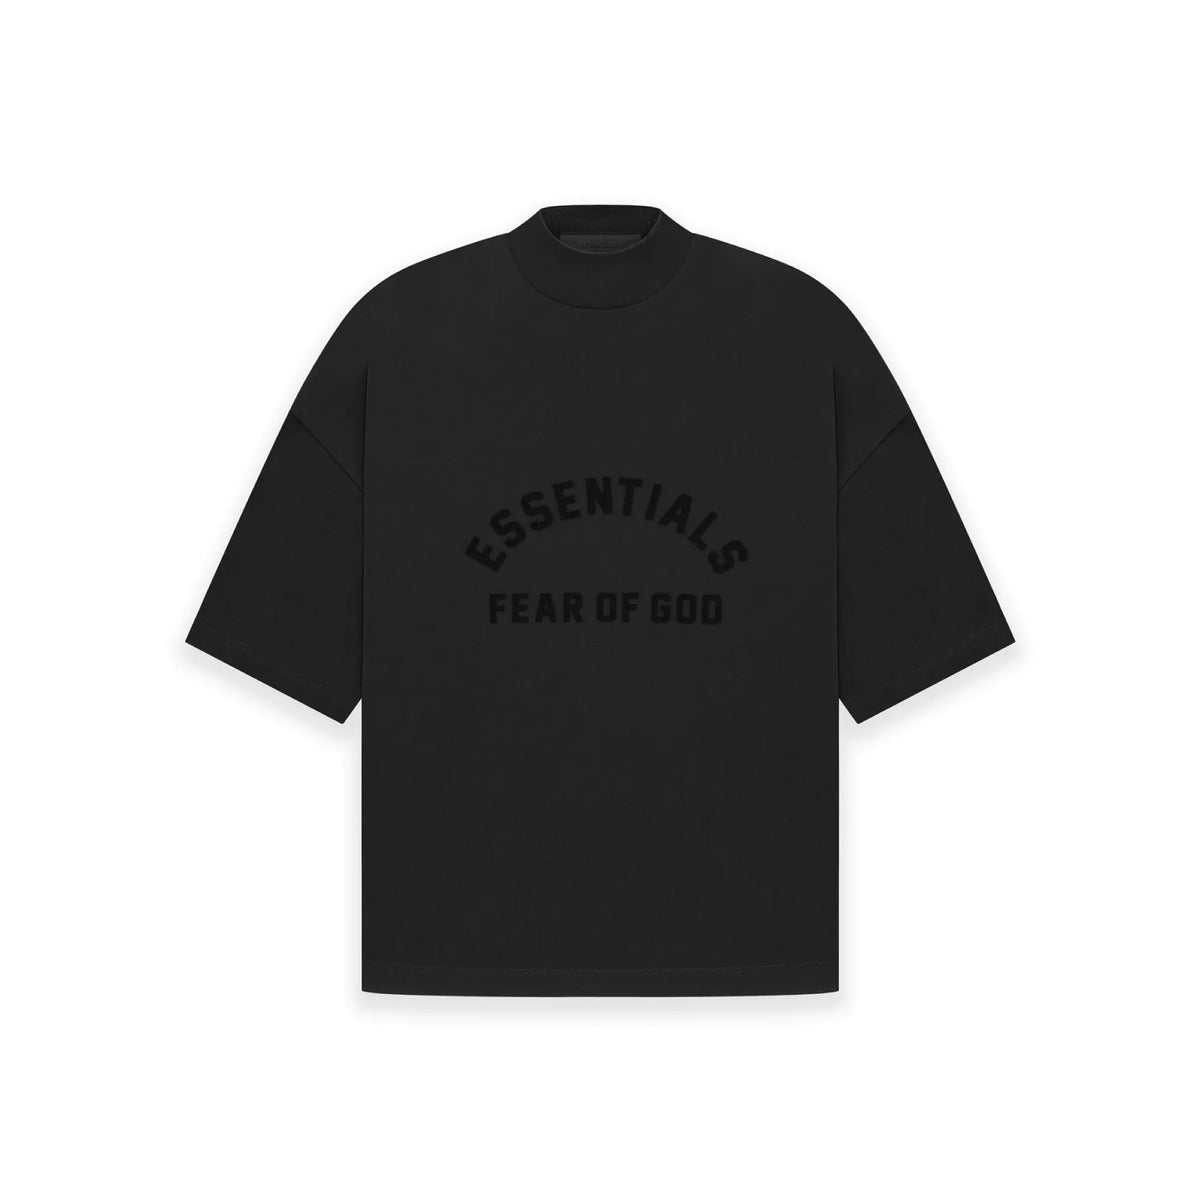 – ESSENTIALS - Aspennigeria Cheap OF Superdry Core guter in Jordan - Black T FEAR Collection) Qualität GOD Jet Outlet (SS23 T-Shirt Shirt -